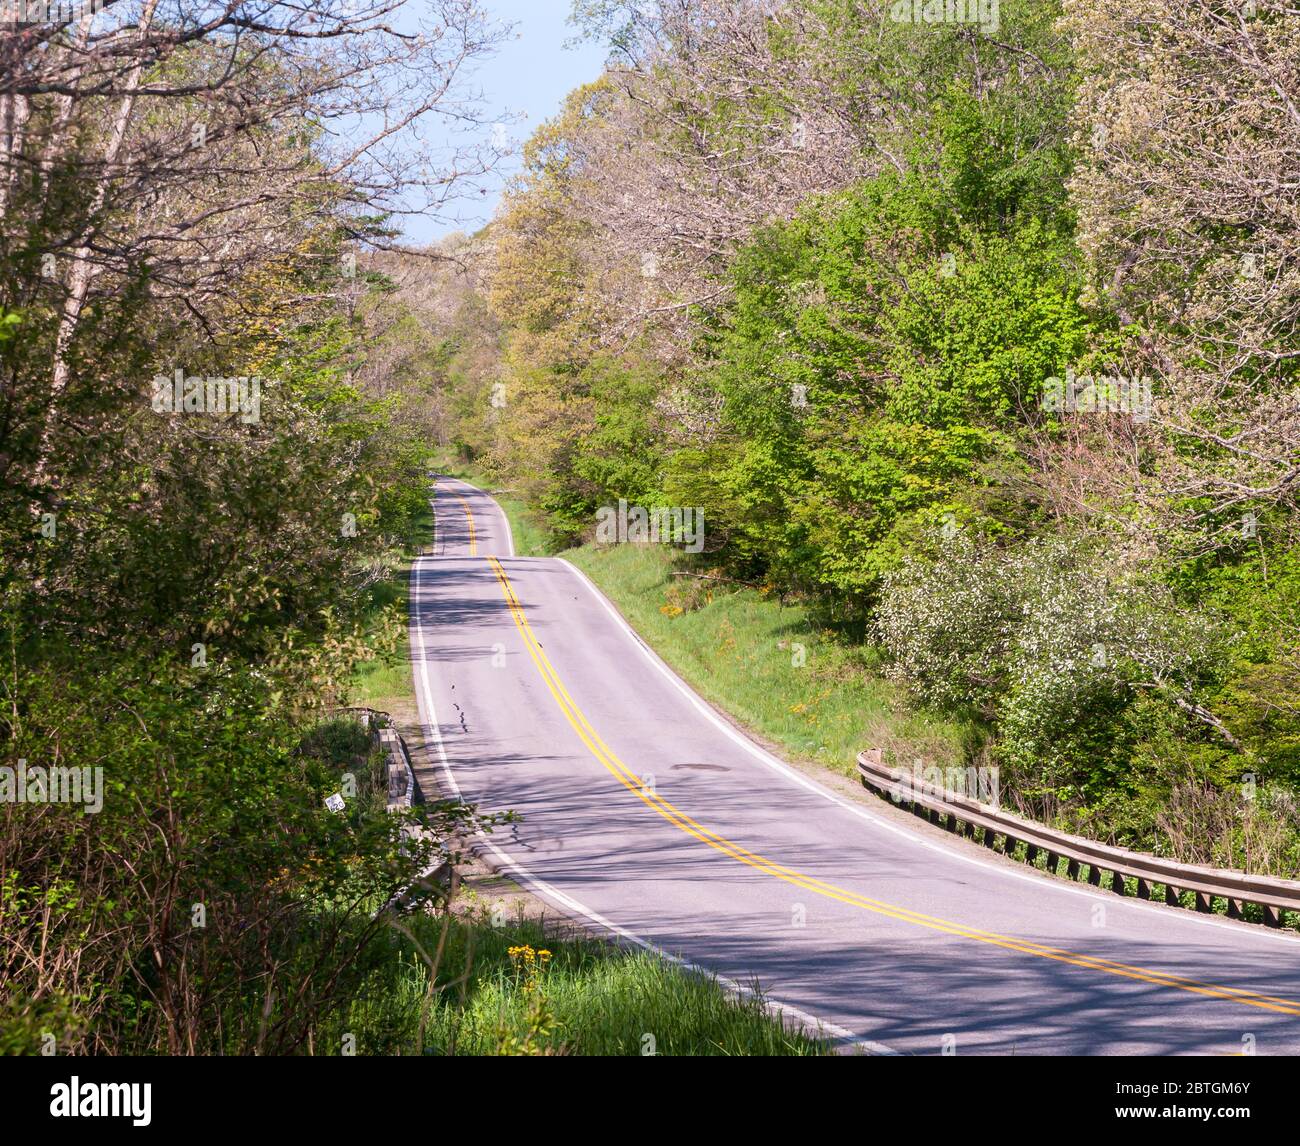 US route 62 dans les bois dans le comté de Venango, Pennsylvanie, USA, le jour de printemps ensoleillé. La route 62 est la seule route qui relie le Canada au Mexique. Banque D'Images